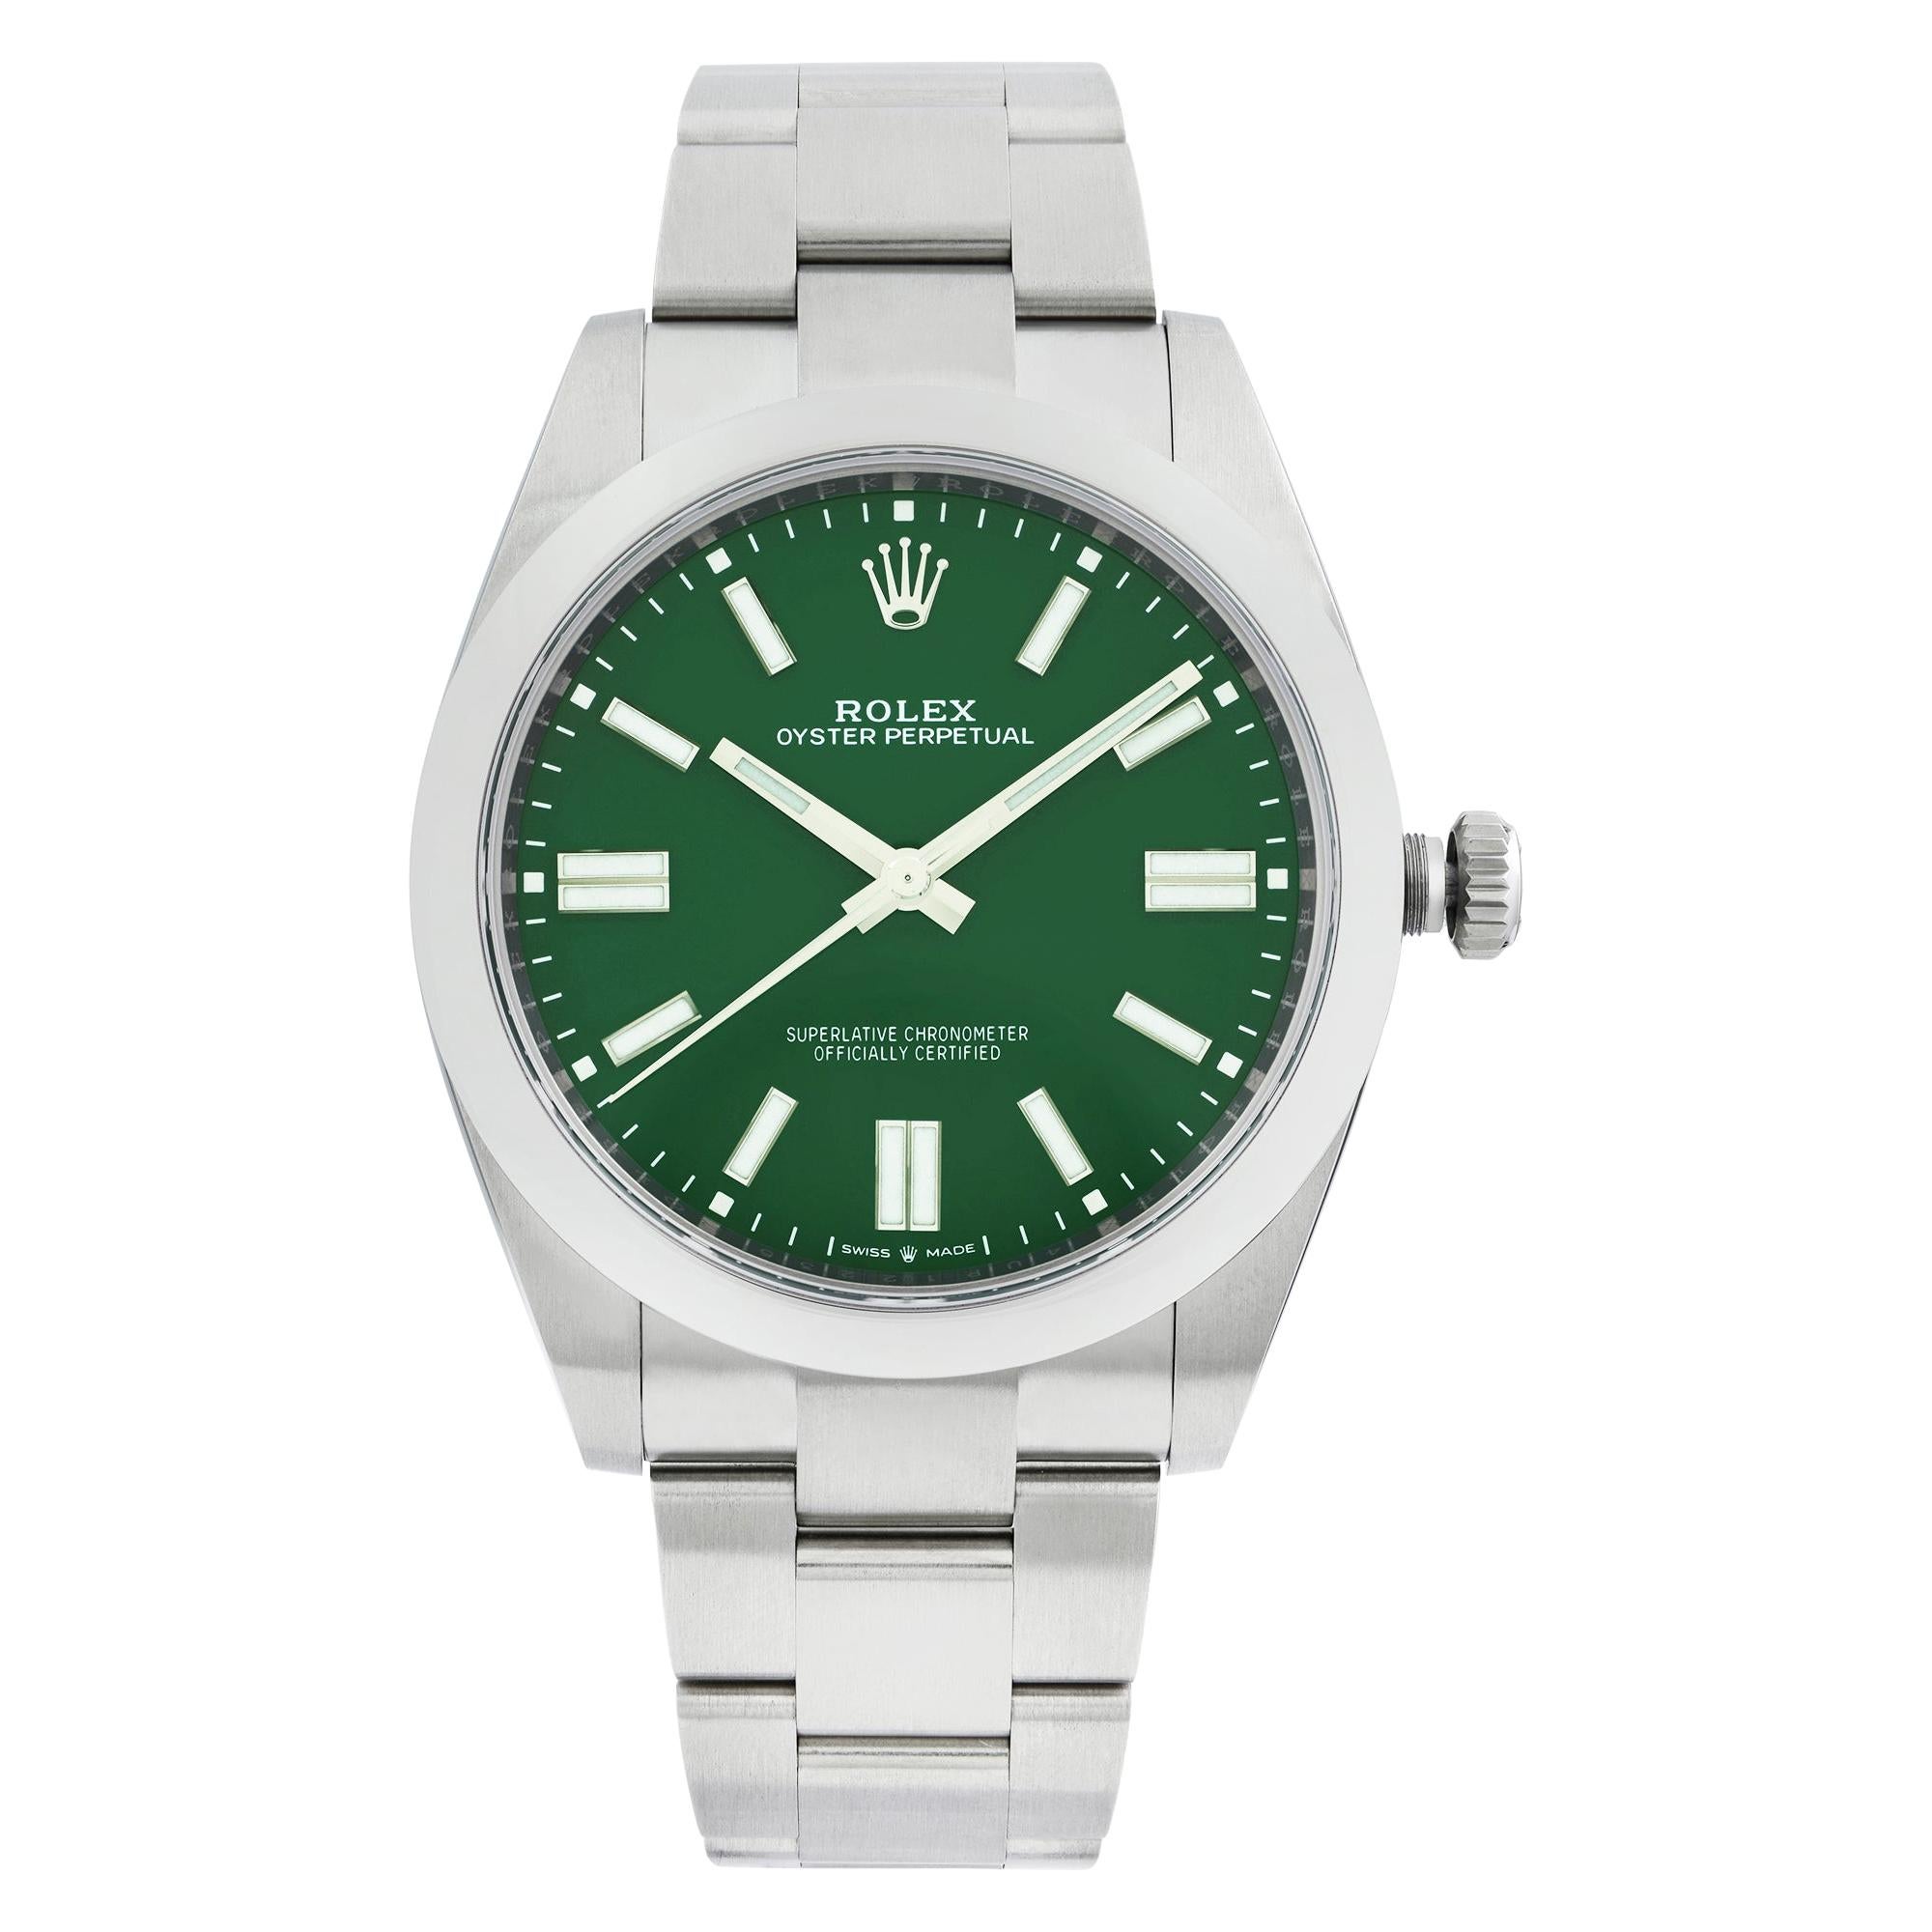 Reloj automático de caballero Rolex Oyster Perpetual de acero personalizado con esfera verde 124300